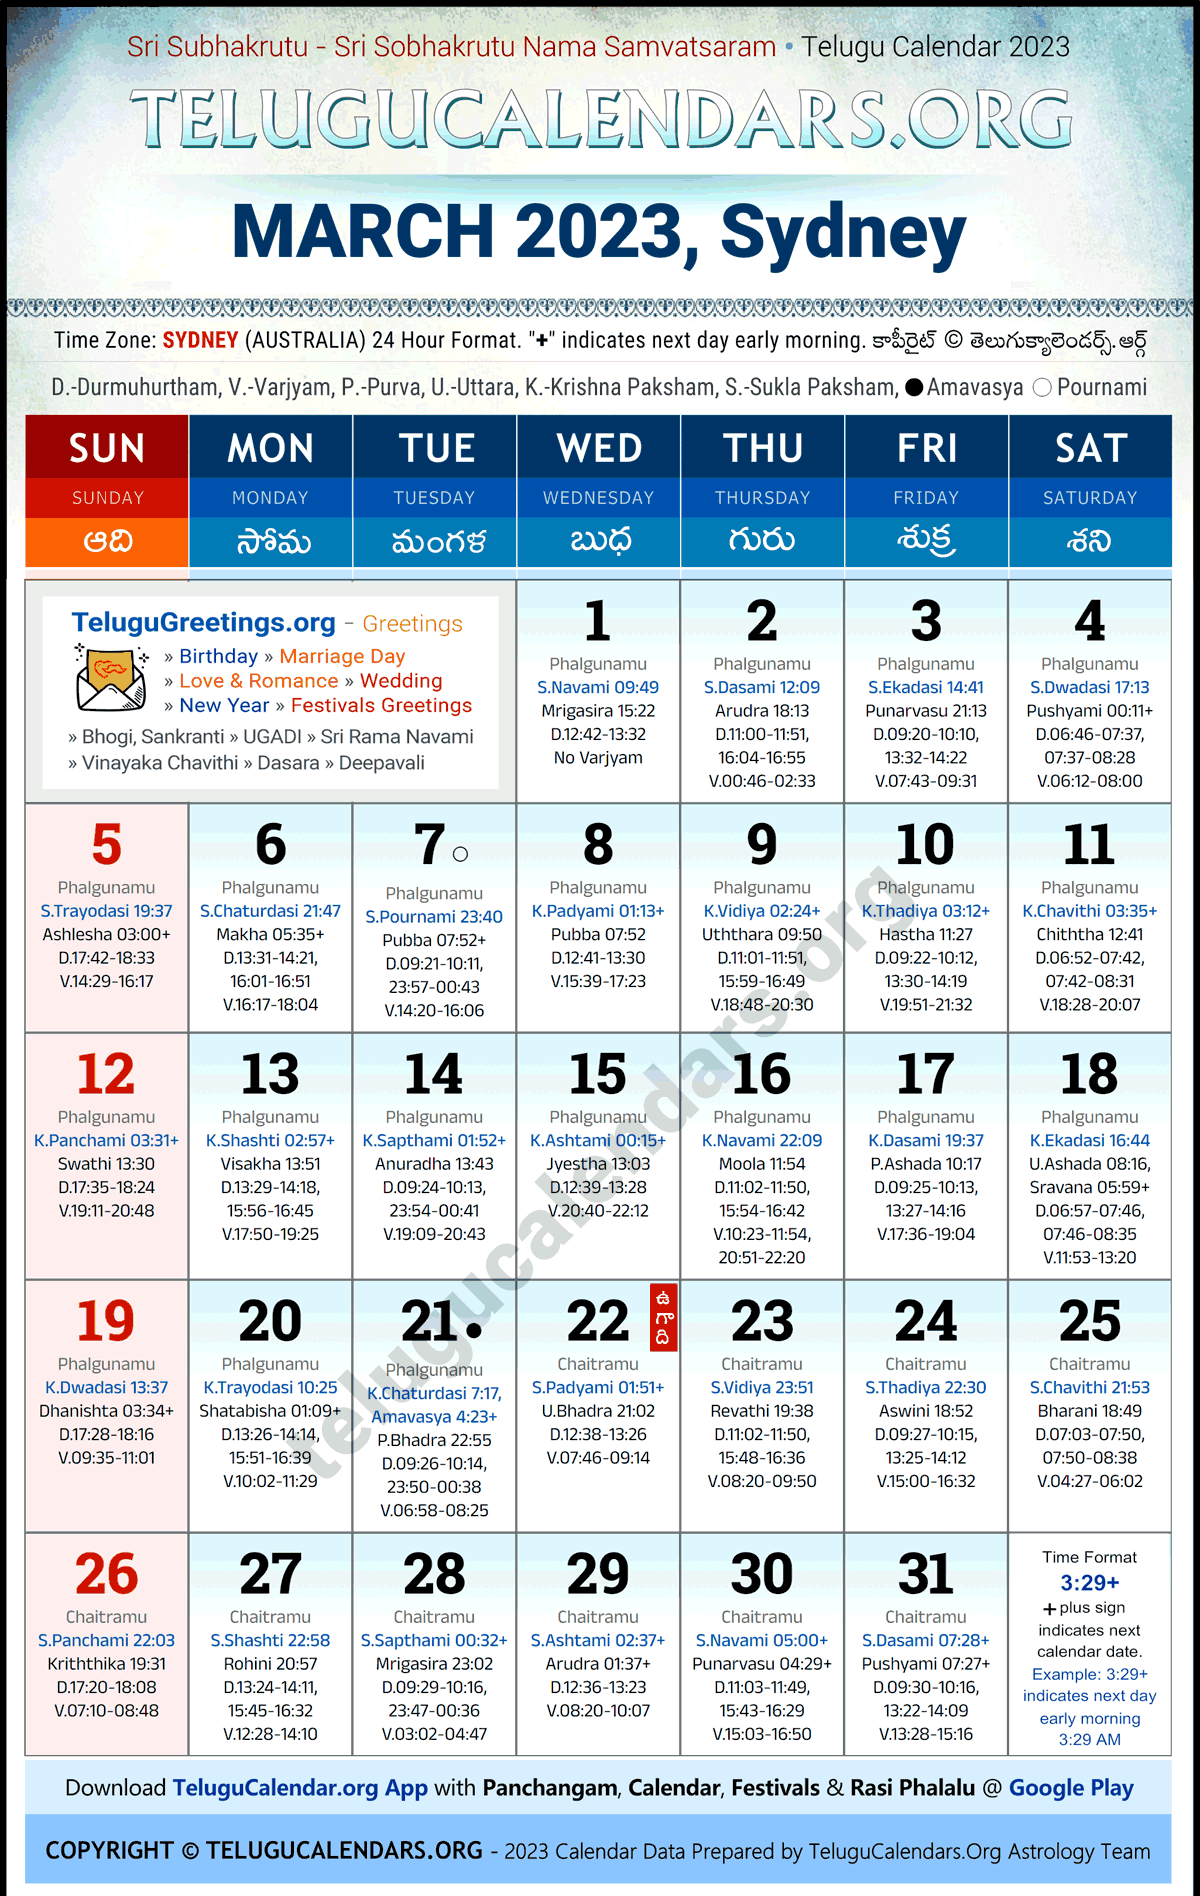 Telugu Calendar 2023 March Festivals for Sydney